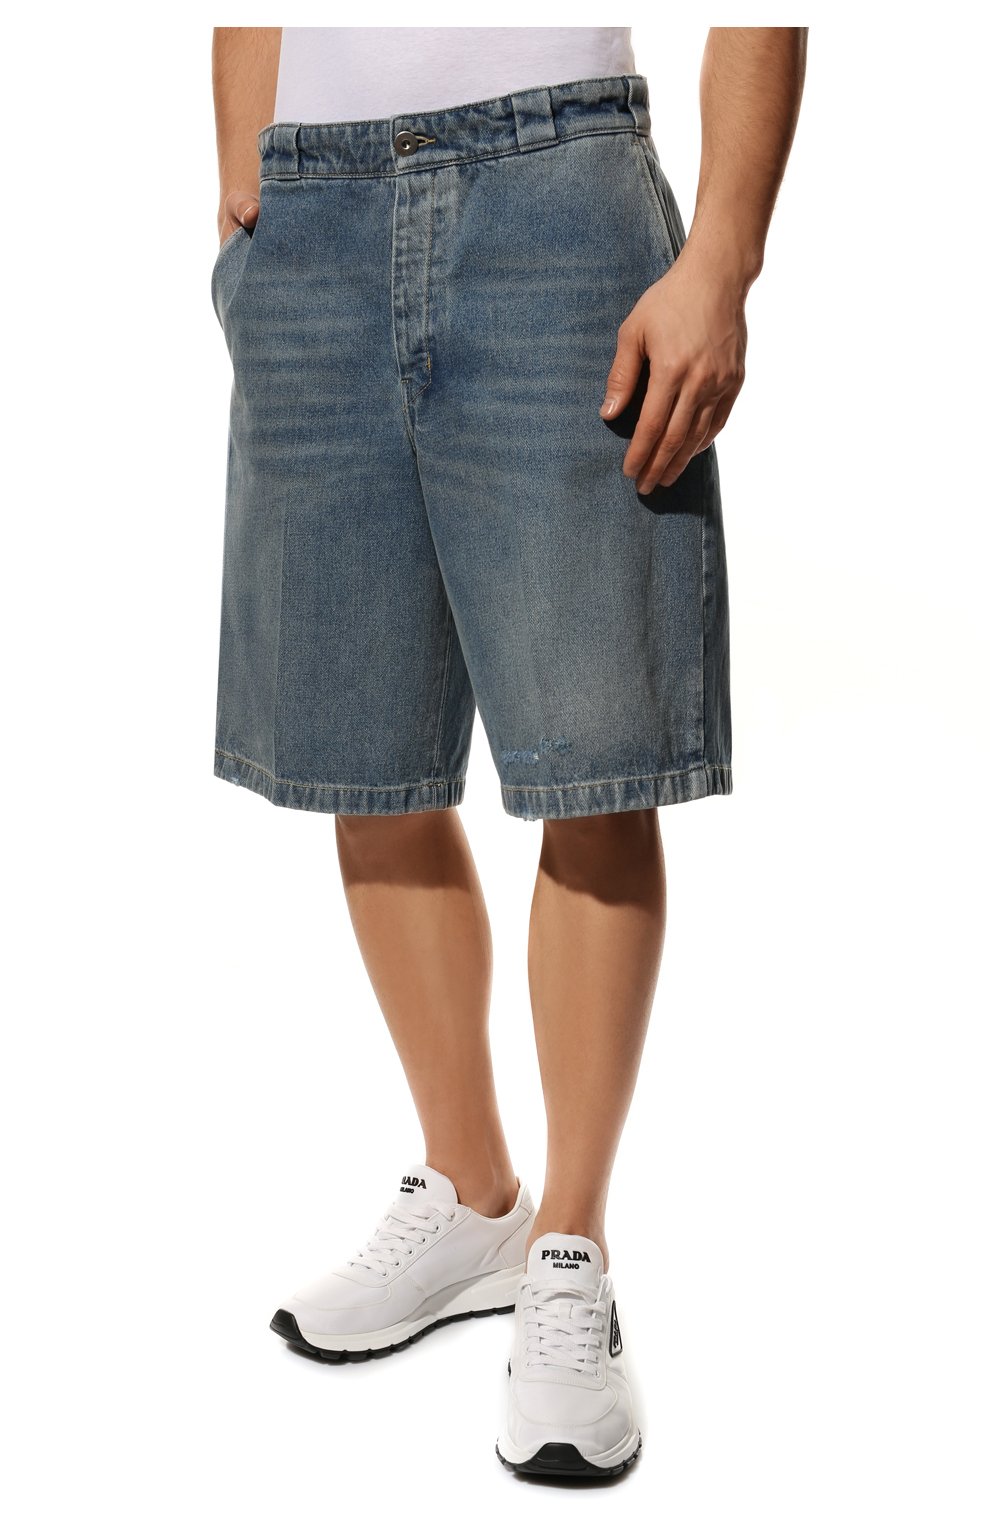 Мужские синие джинсовые шорты PRADA купить в интернет-магазине ЦУМ